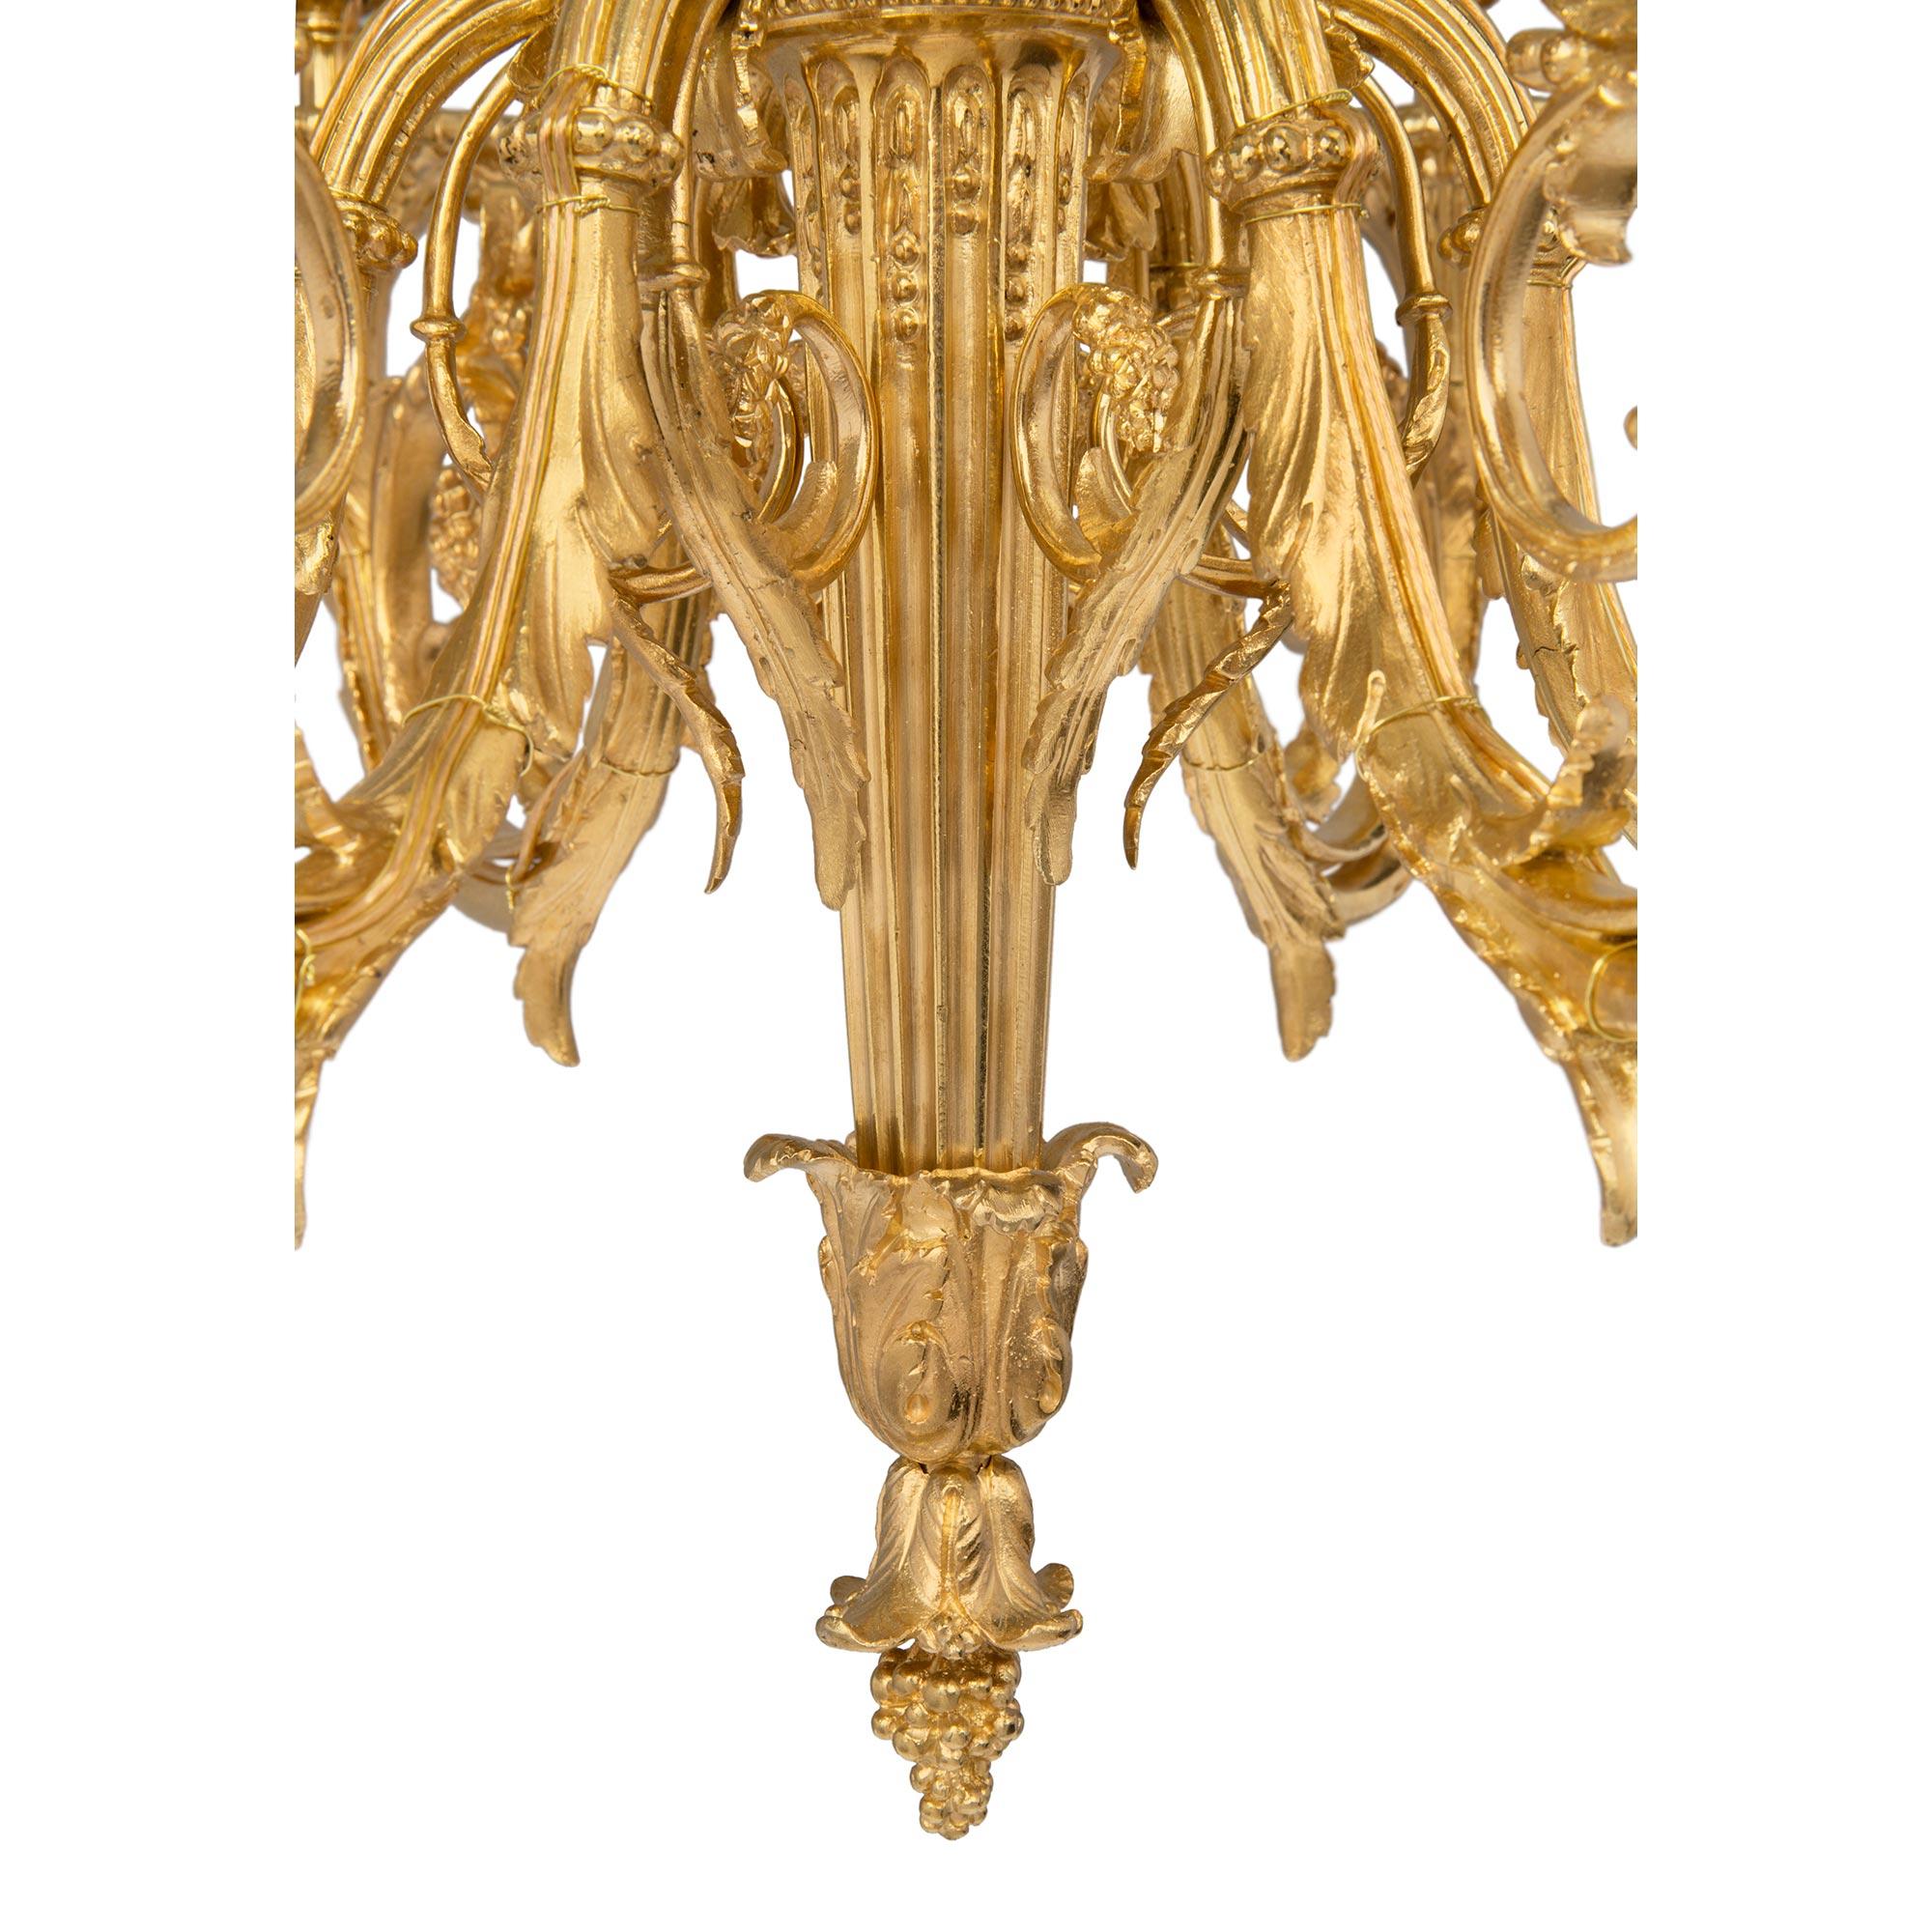 French 19th Century Louis XVI St. Belle Époque Period Six-Arm Ormolu Chandelier For Sale 4